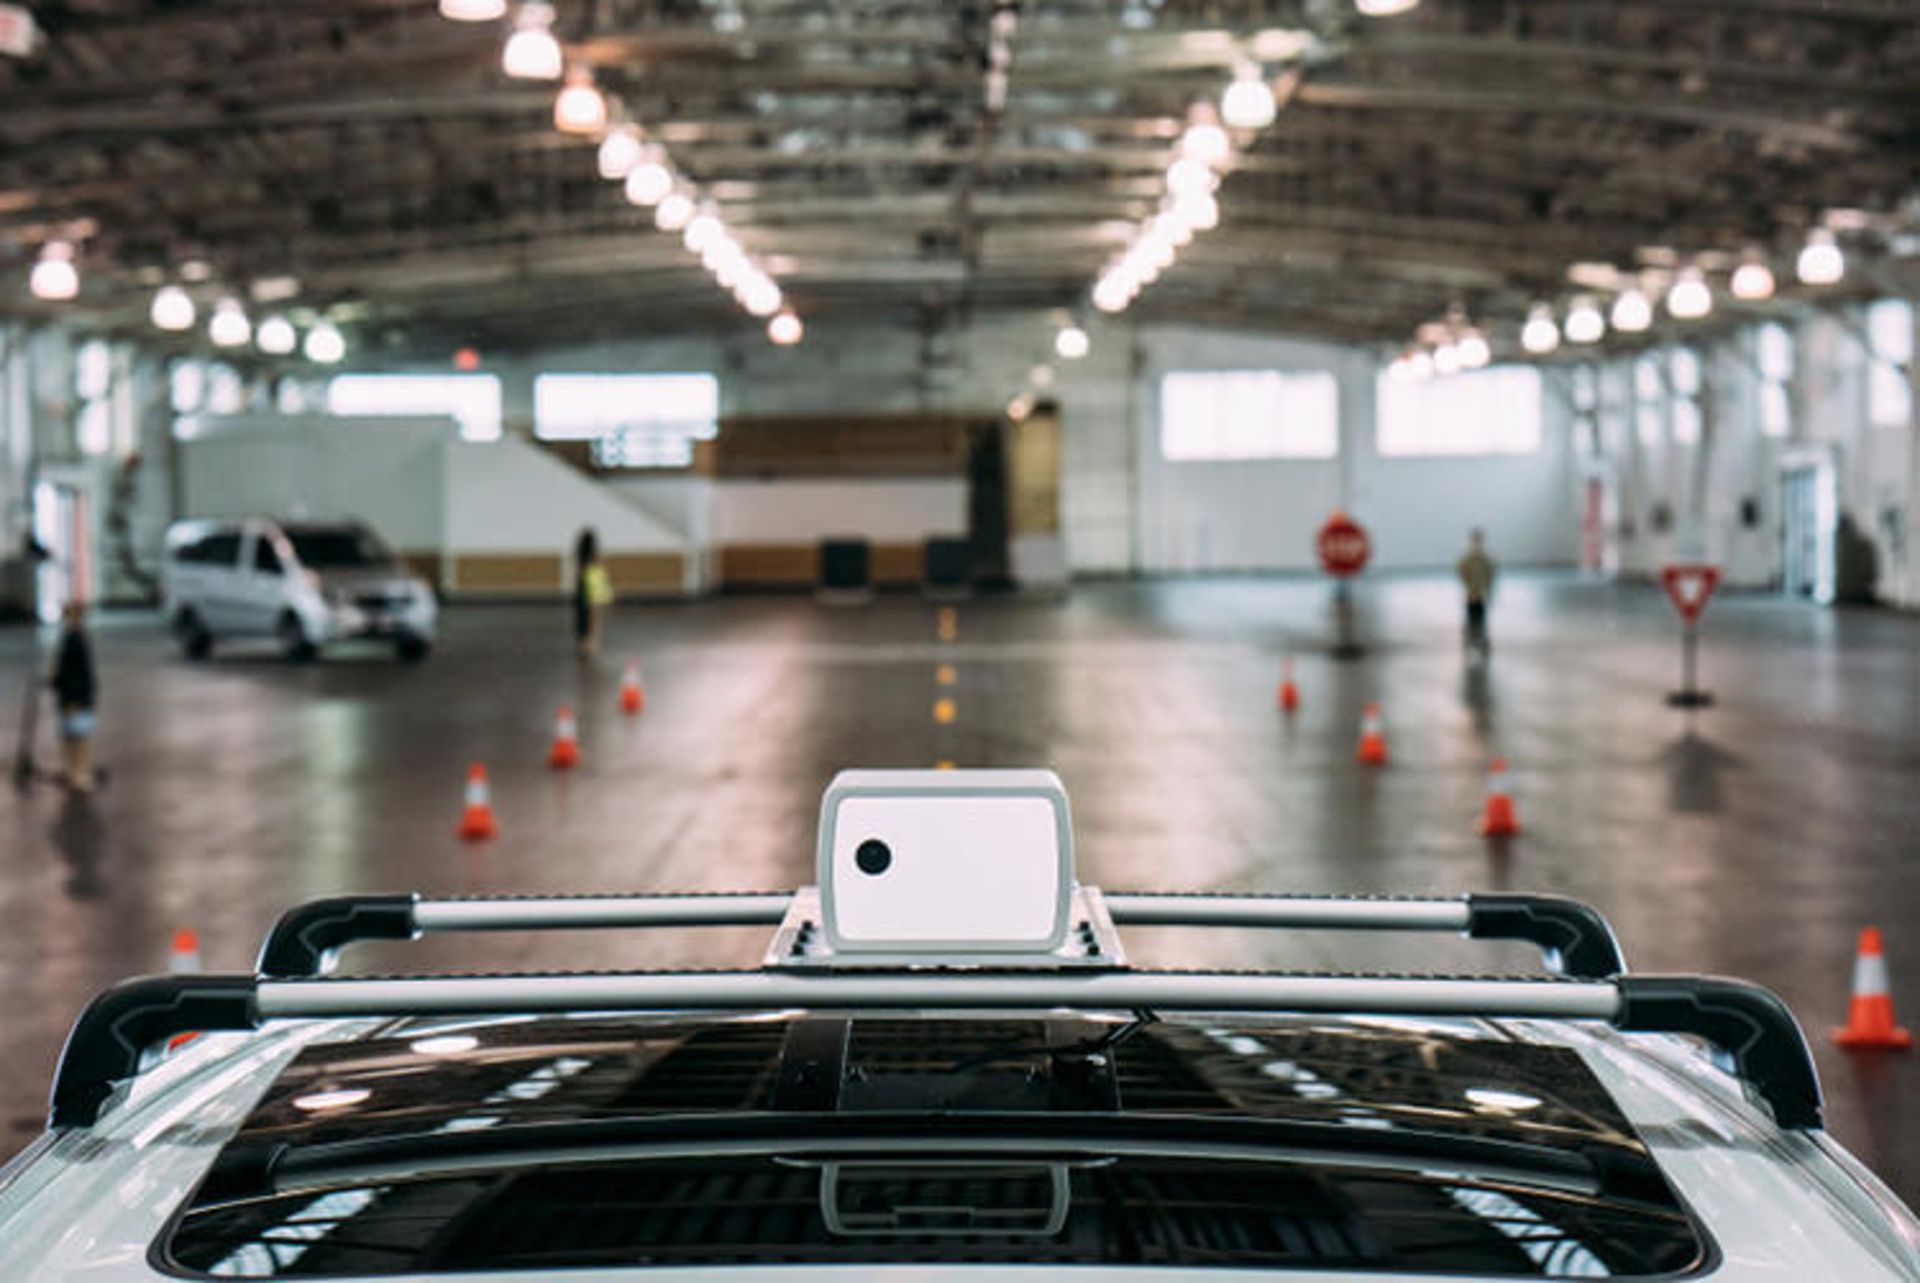 مرجع متخصصين ايران Aeva lidar autonomous car sensor / حسگر ليدار خودروي خودران آئوا 